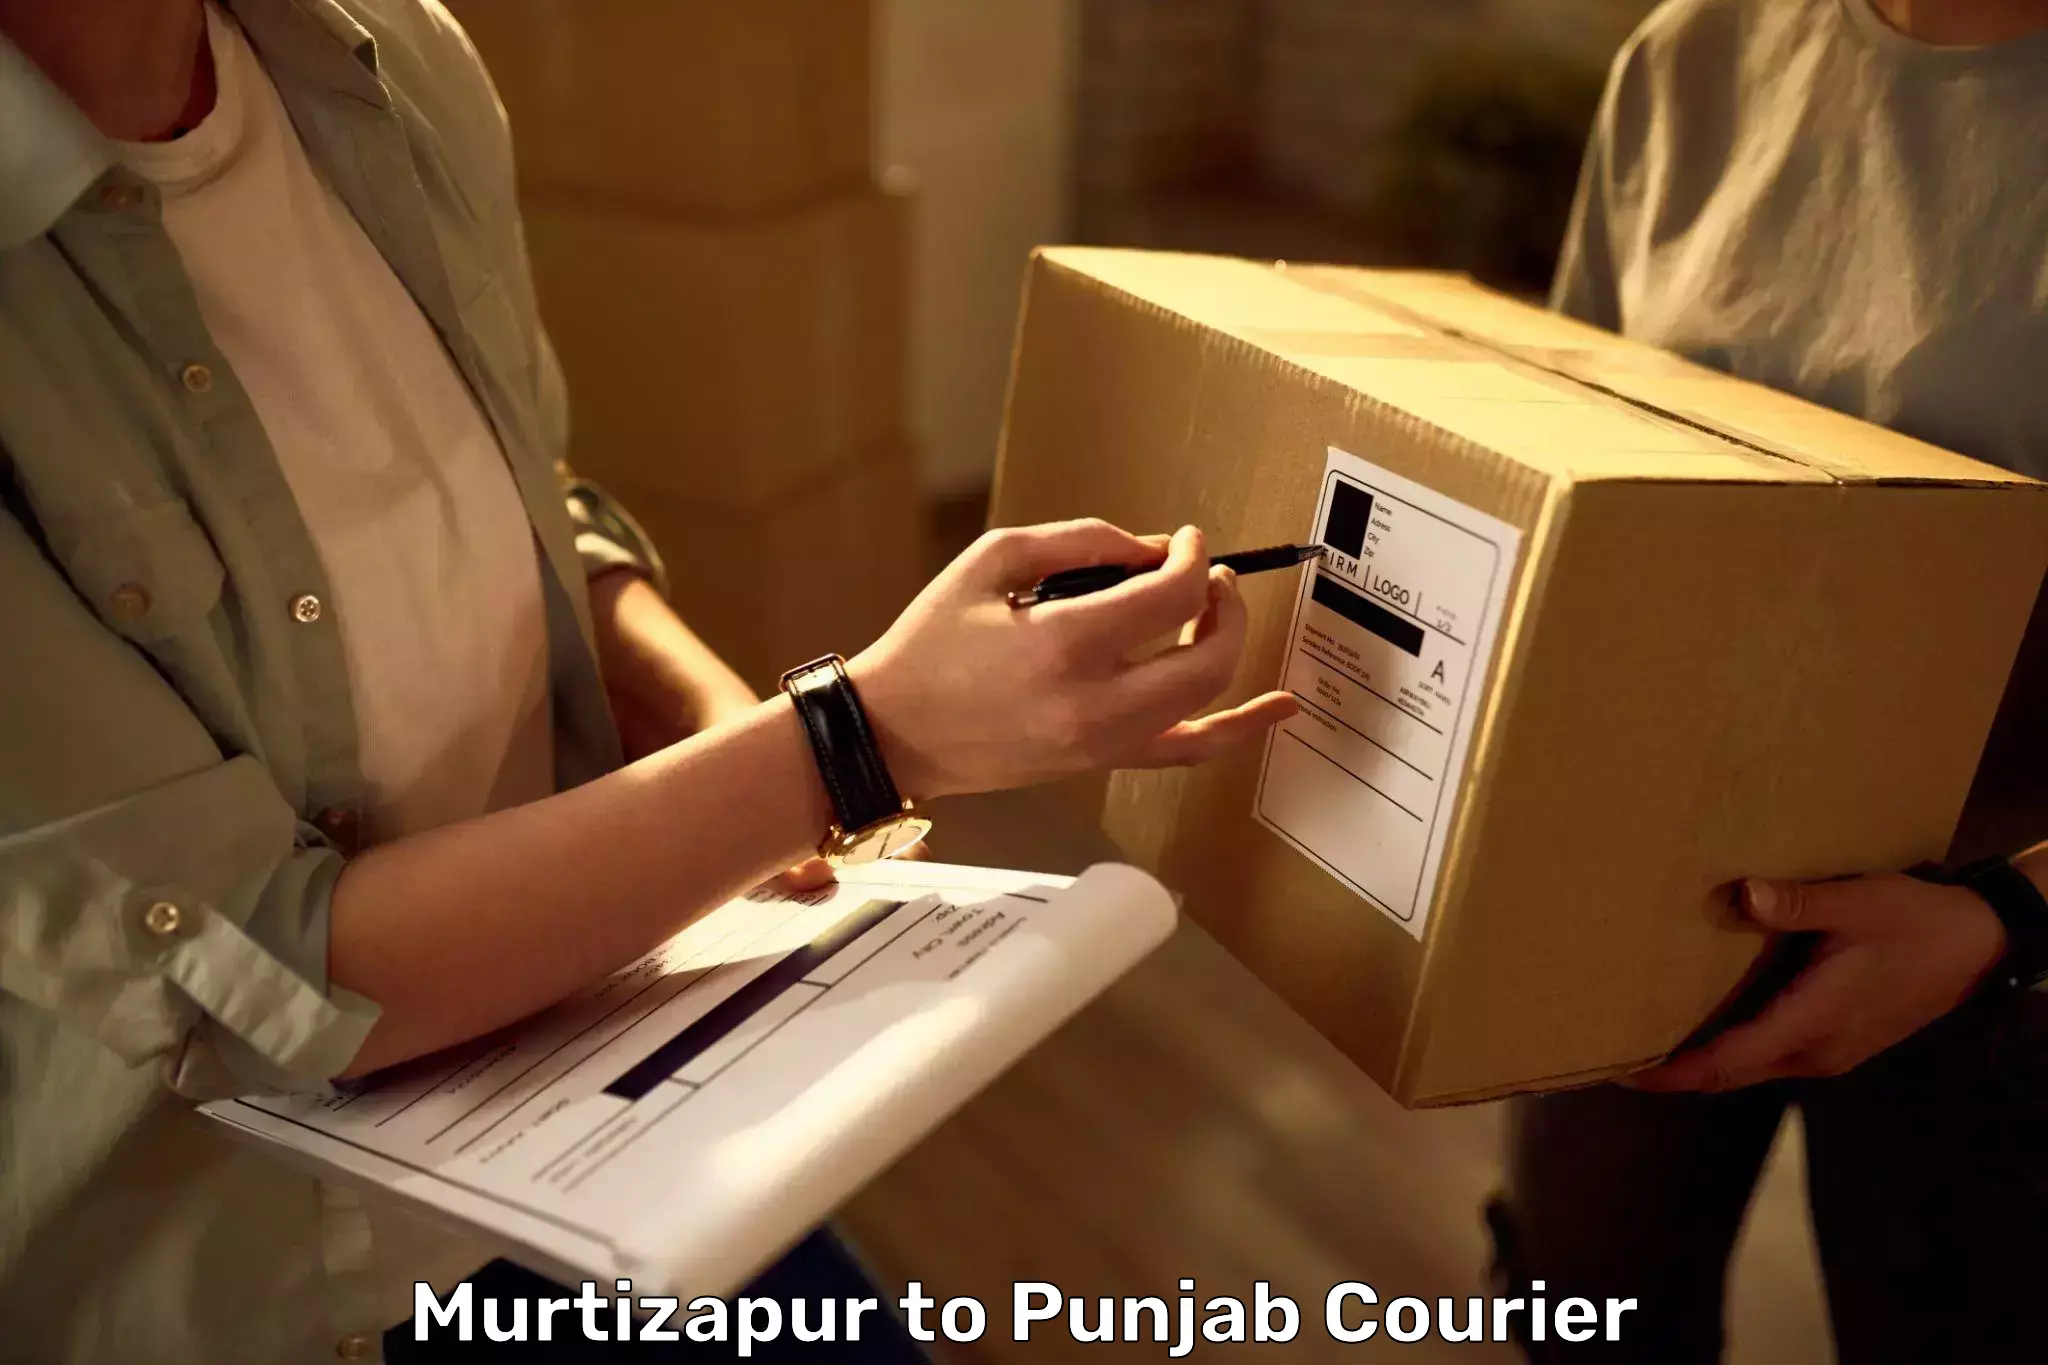 Luggage forwarding service Murtizapur to Punjab